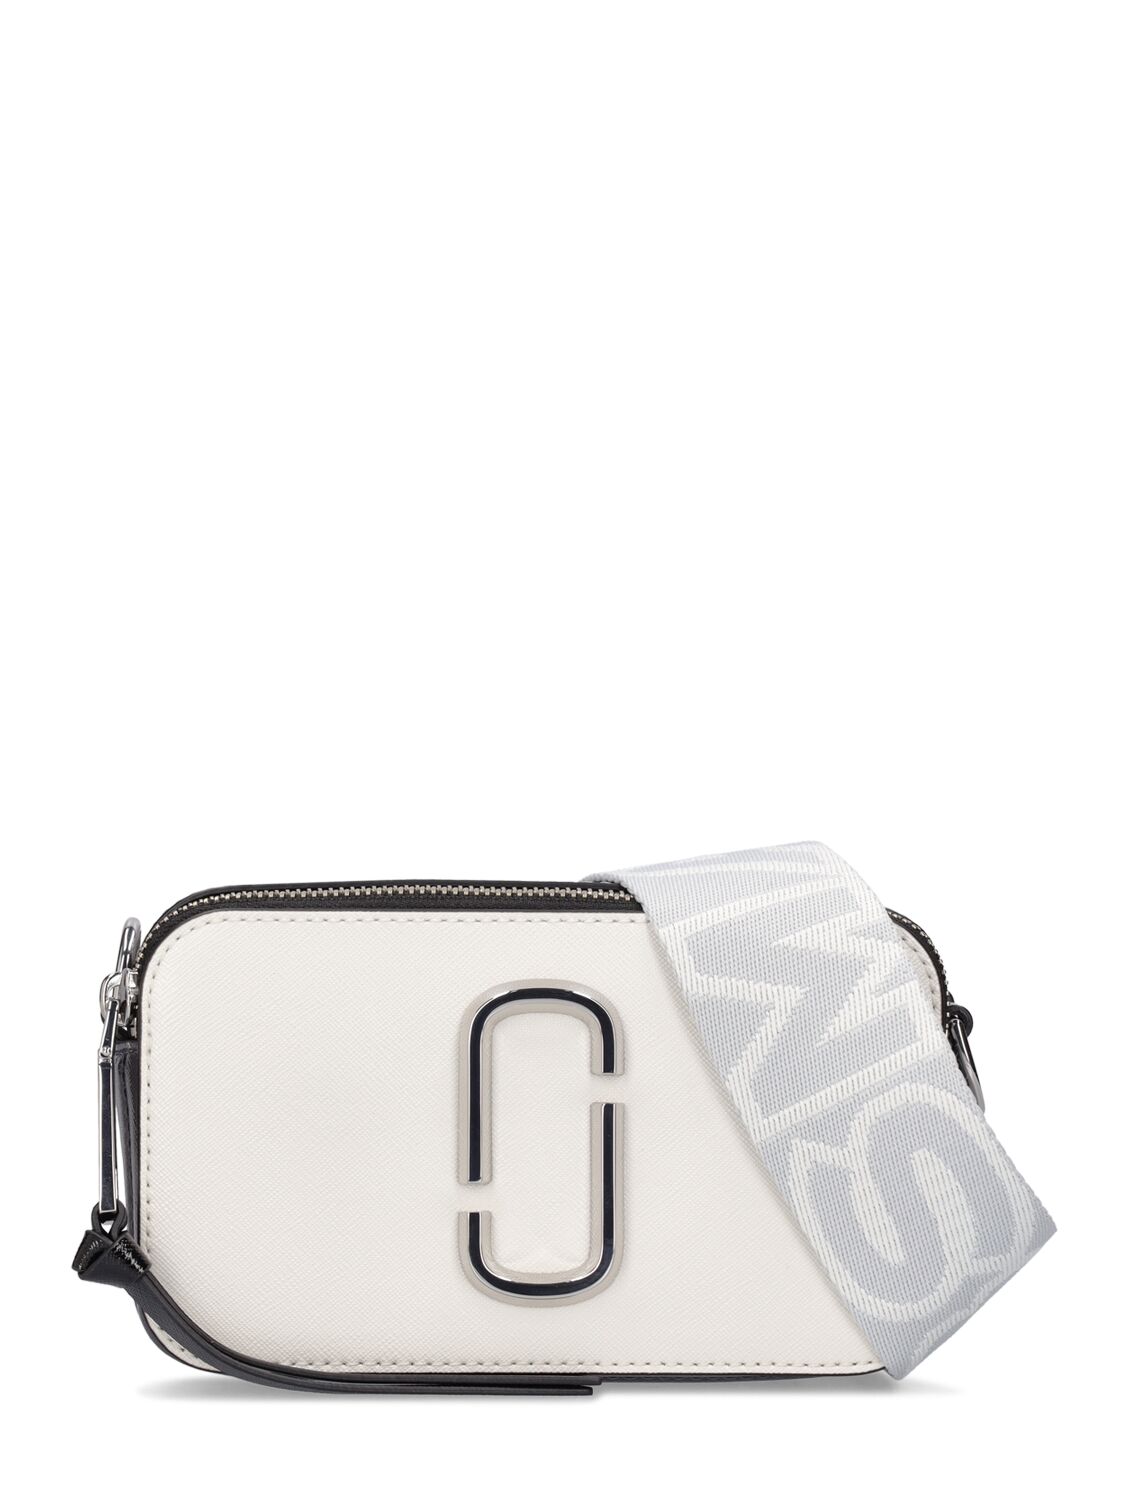 Marc Jacobs Snapshot Shoulder Bag In Weiss